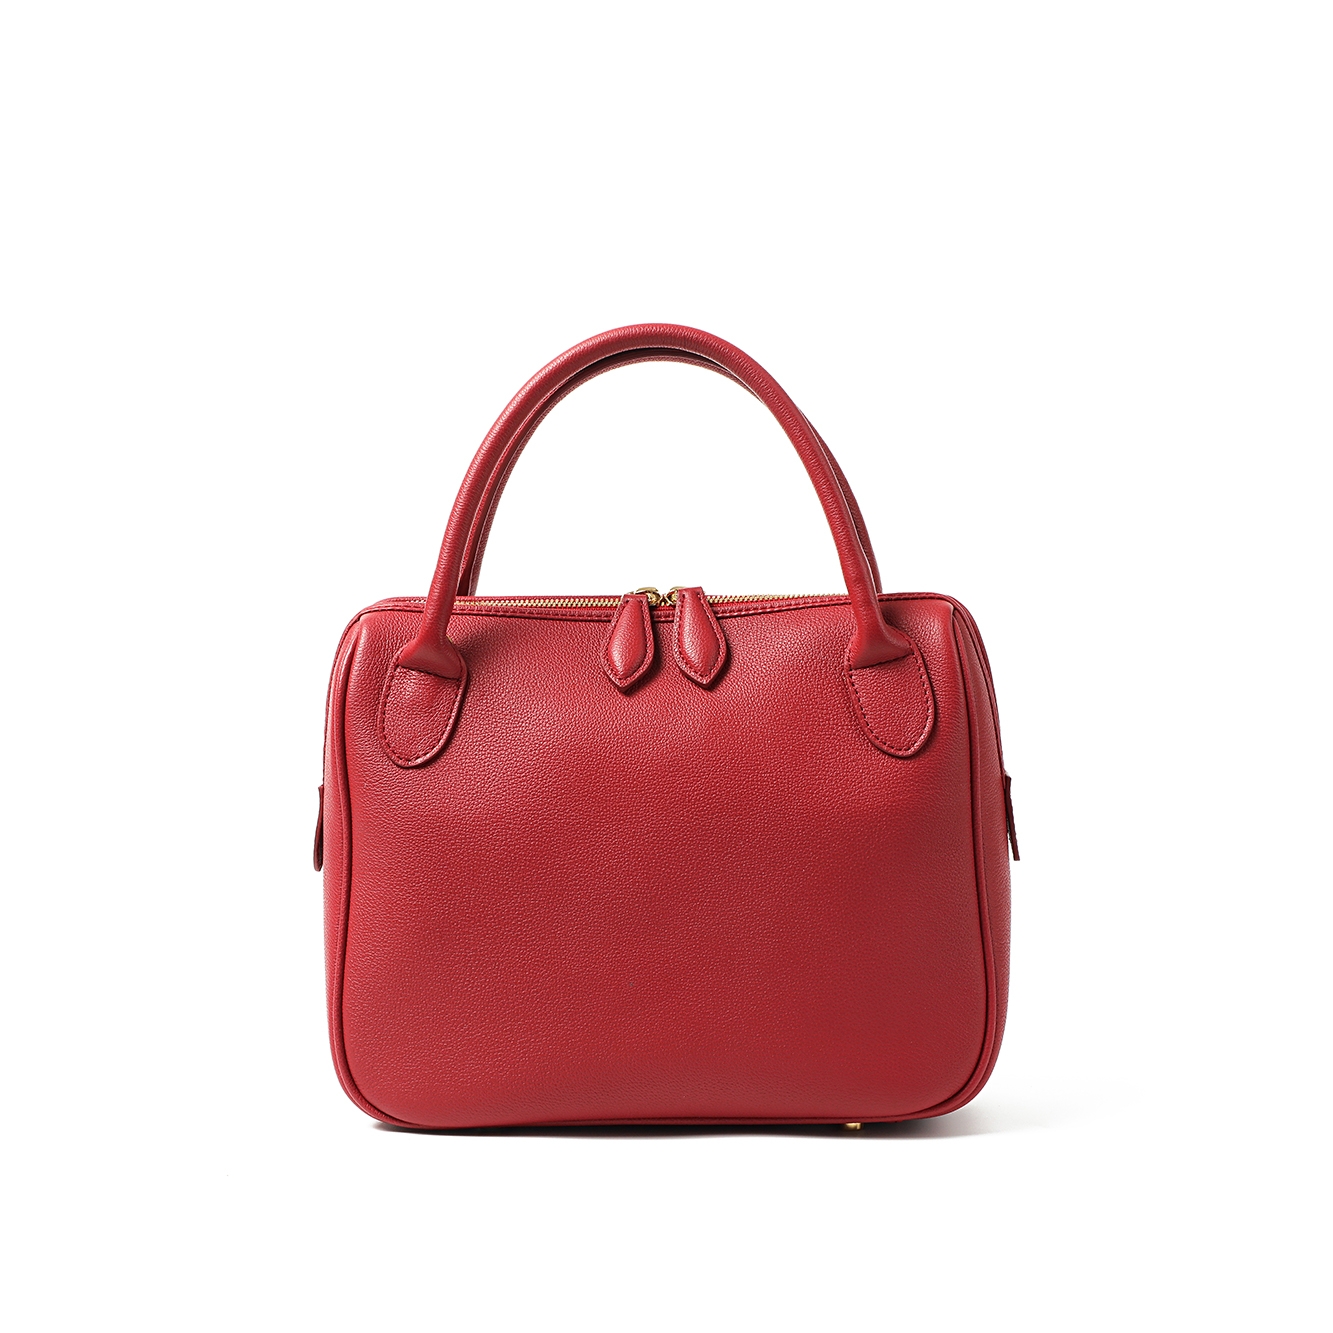 Gramercy bag _ Scarlet Red _ S